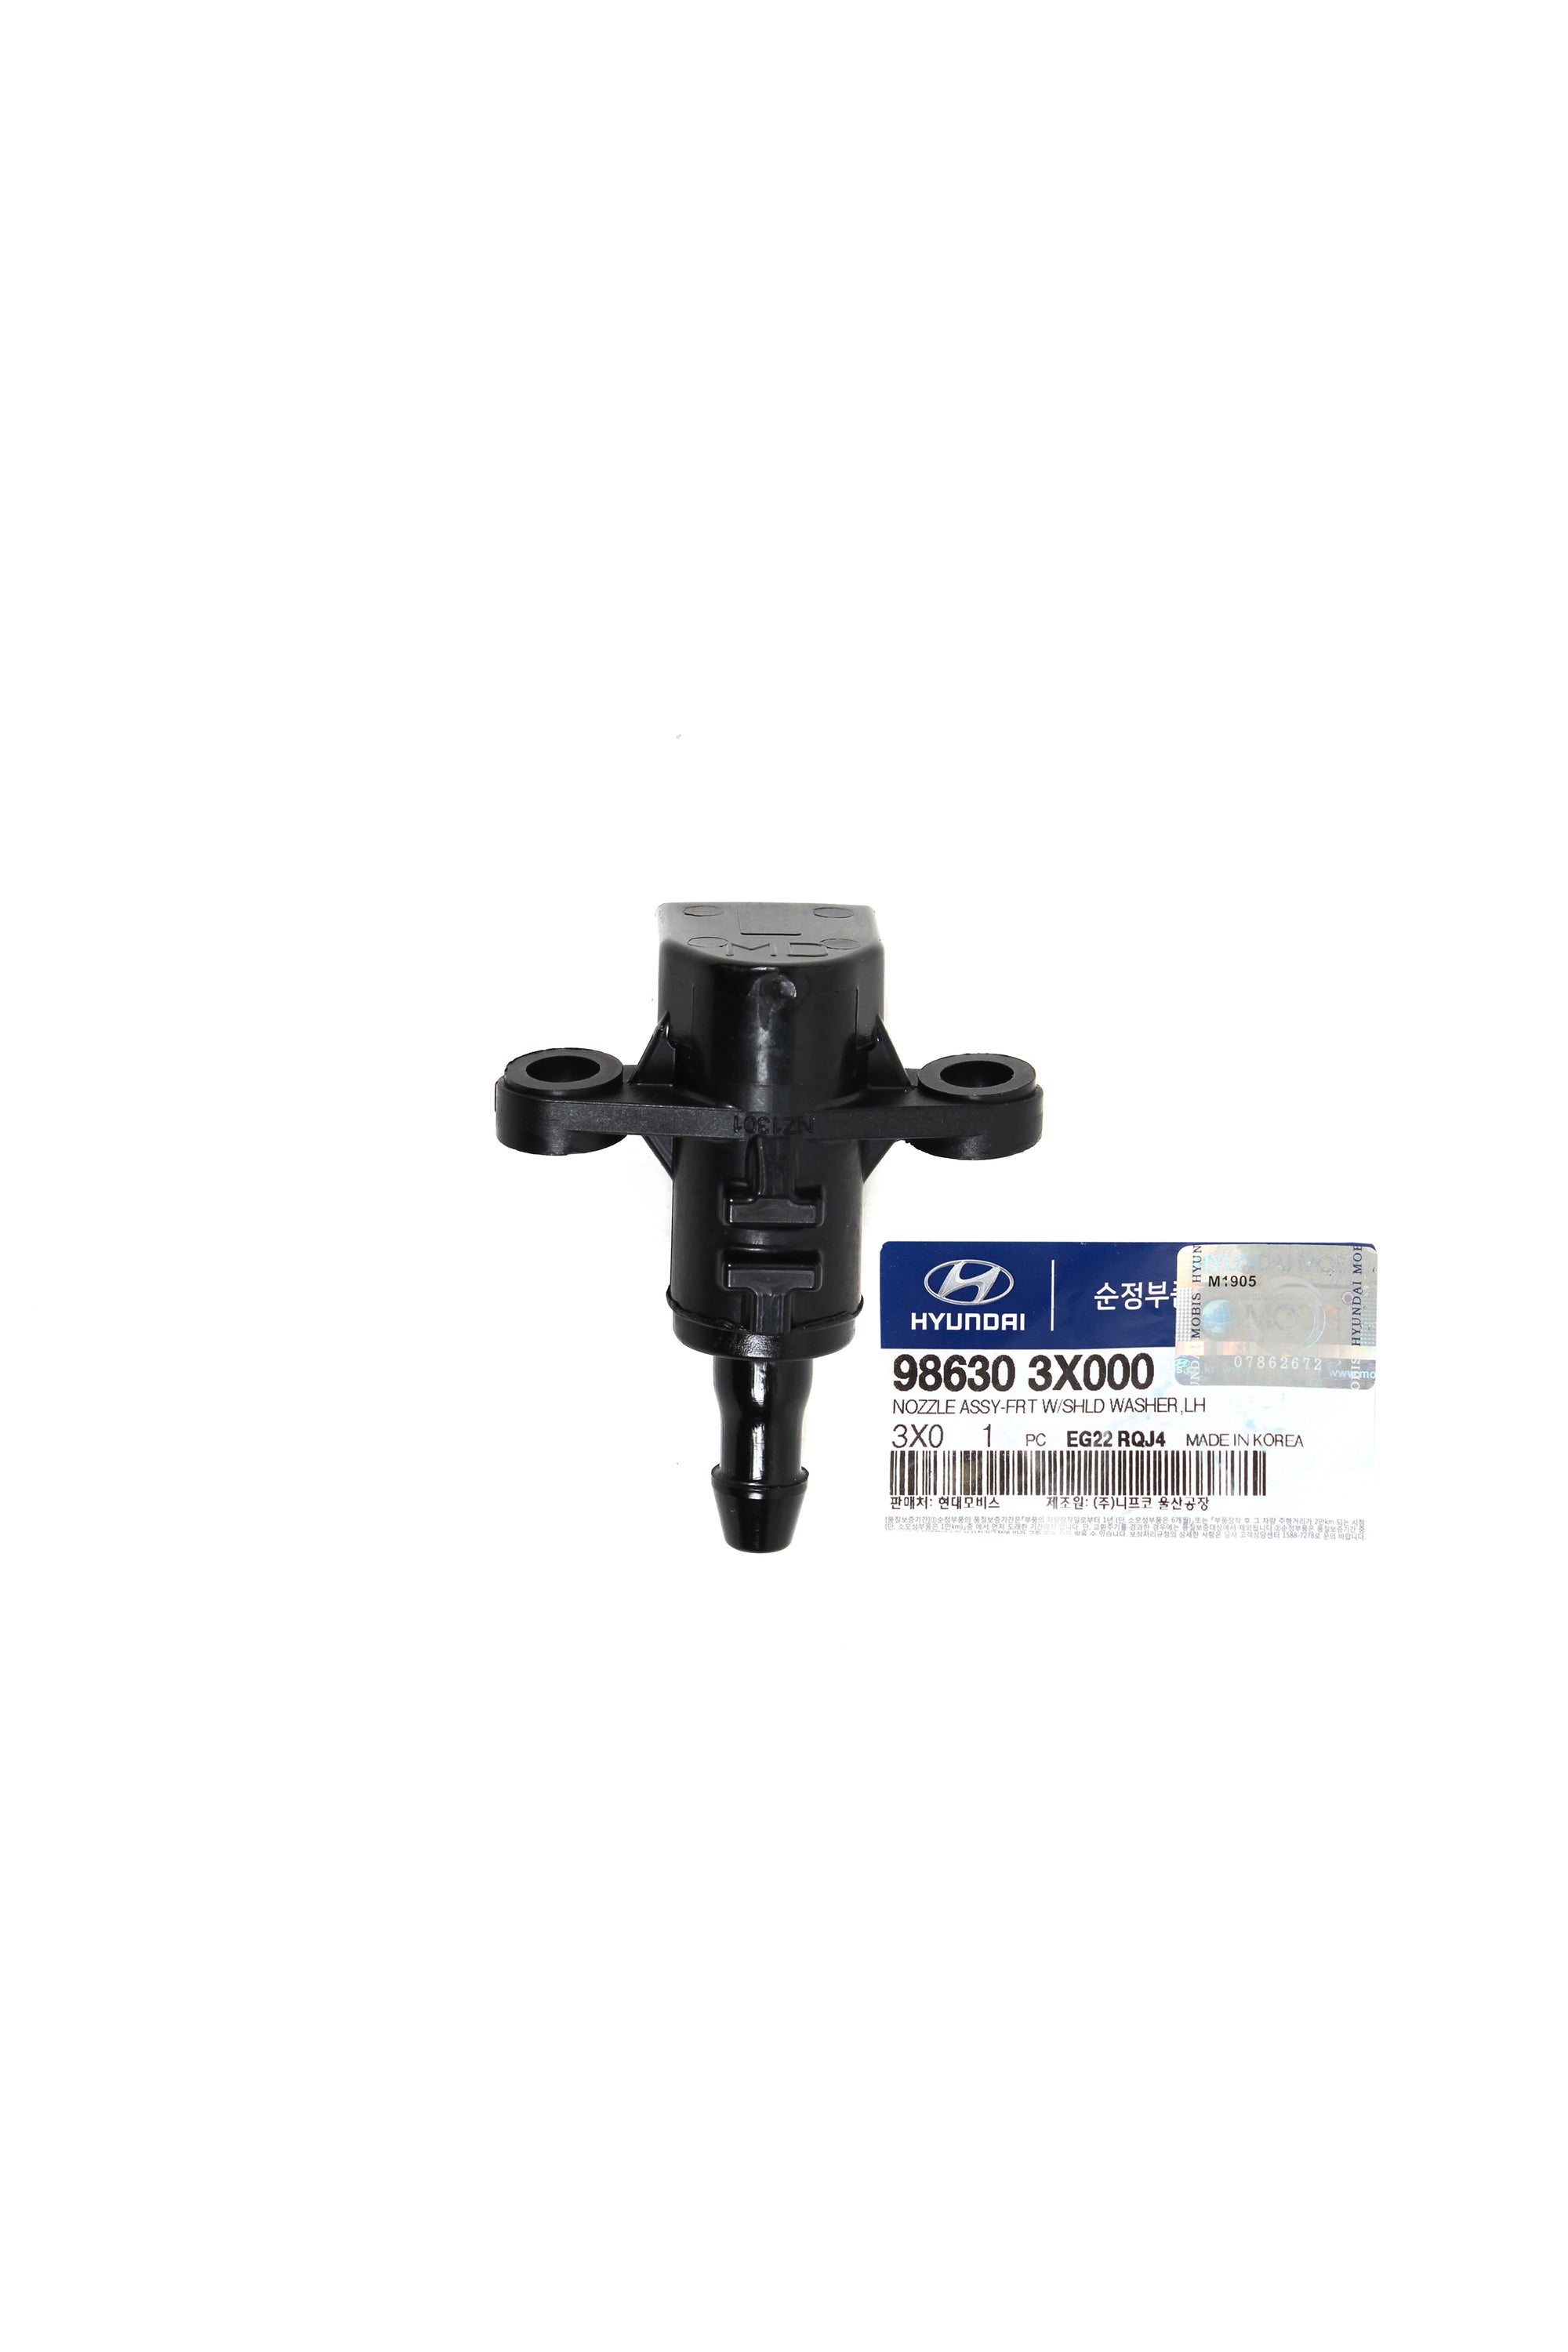 GENUINE Wiper Washer Nozzle LEFT & RIGHT for 11-18 Elantra Forte Rio 986303X900